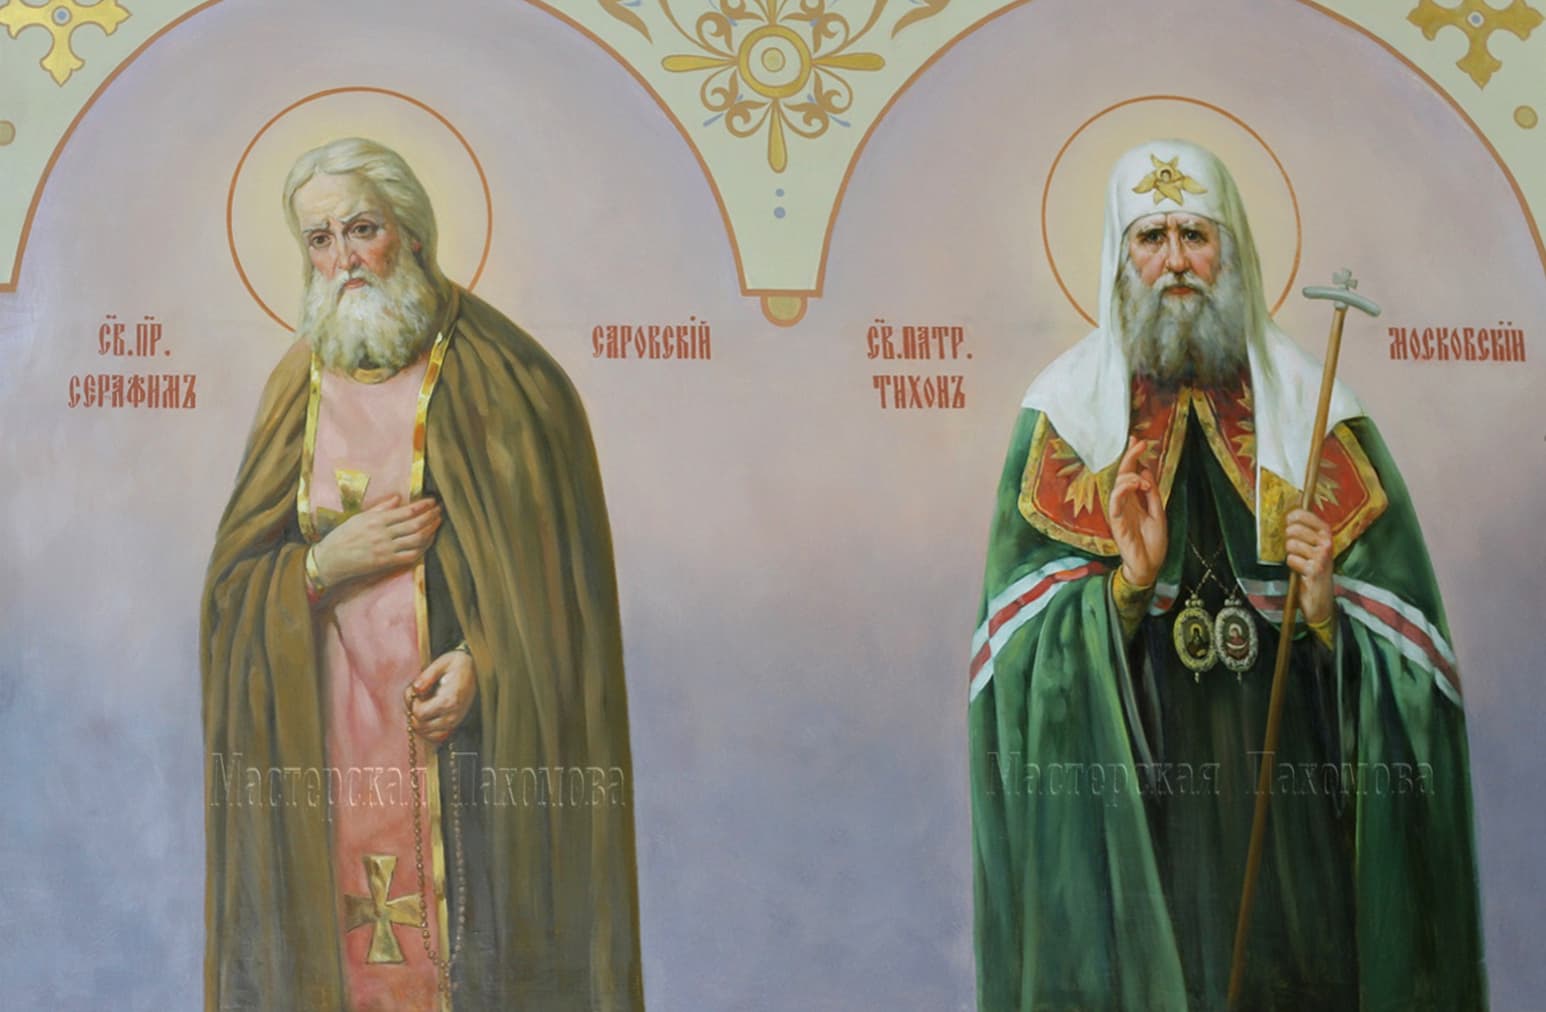 Святой Серафим Саровский , Святой Патриарх Тихон Московский